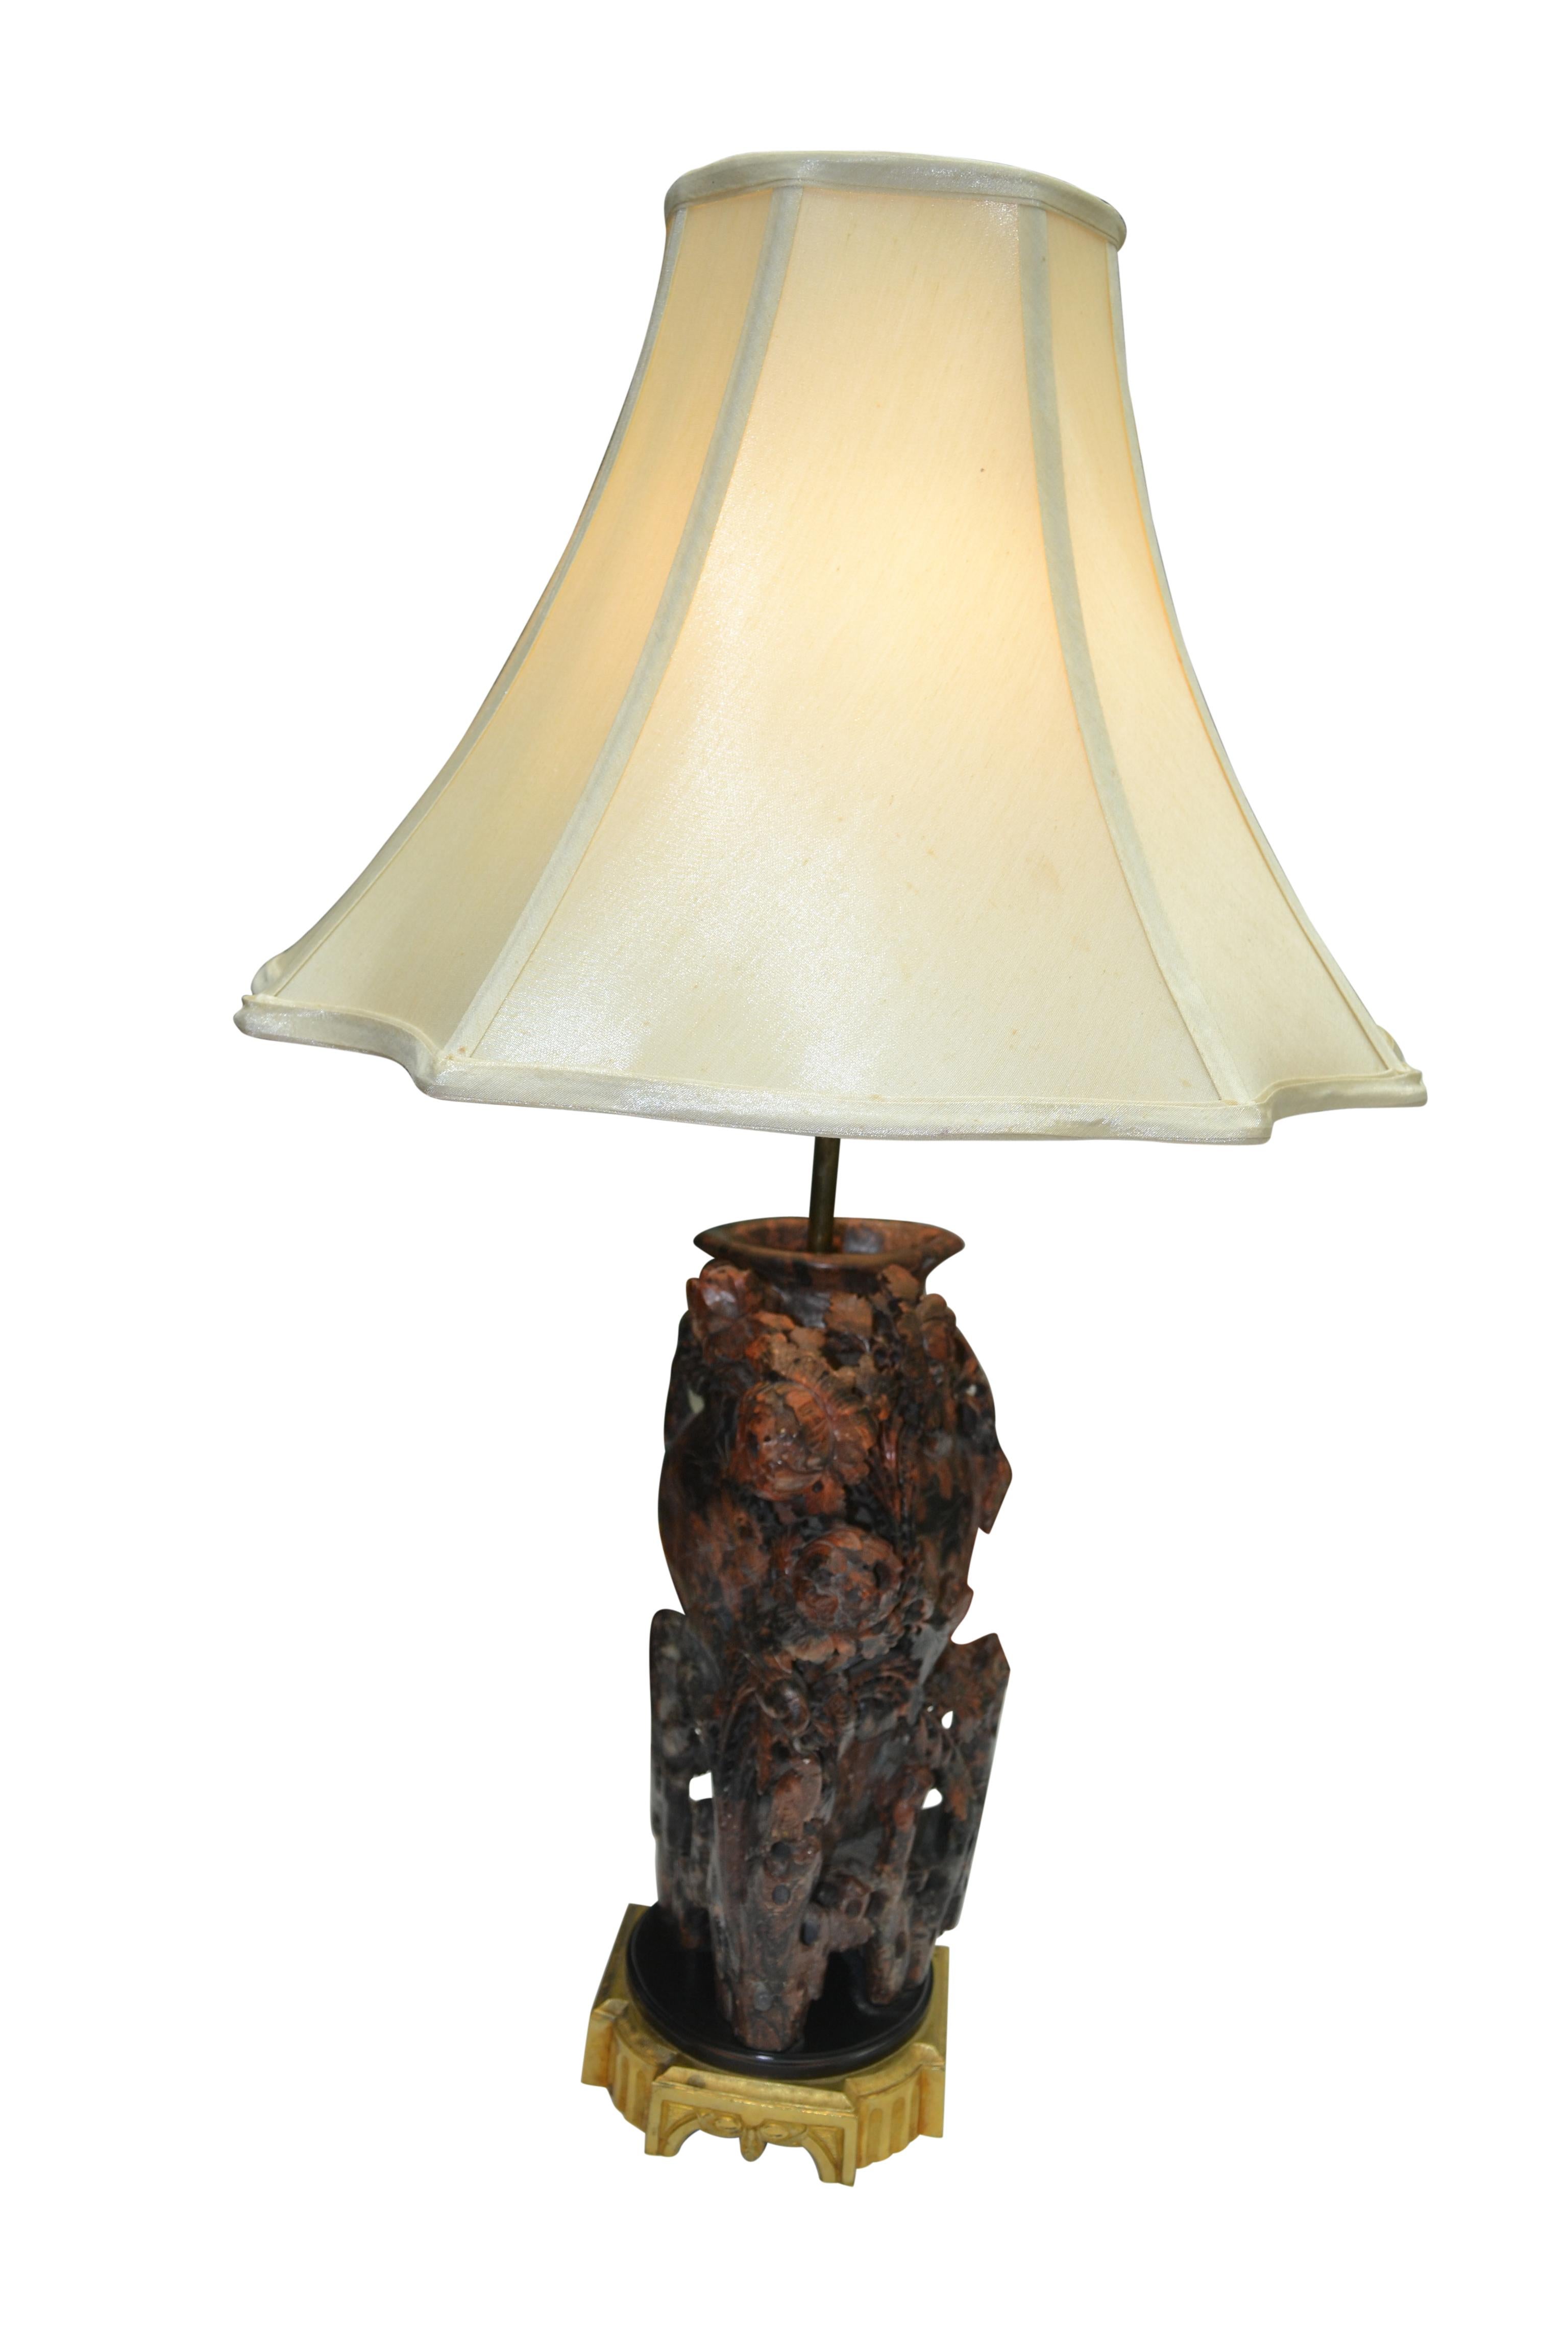 Ein geschnitzter Lampenfuß aus Speckstein, ungewöhnlich wegen der Farbe des Steins: rötlich, braun und schwarz. Die Schnitzerei hat die Form einer Vase, die fast vollständig mit 